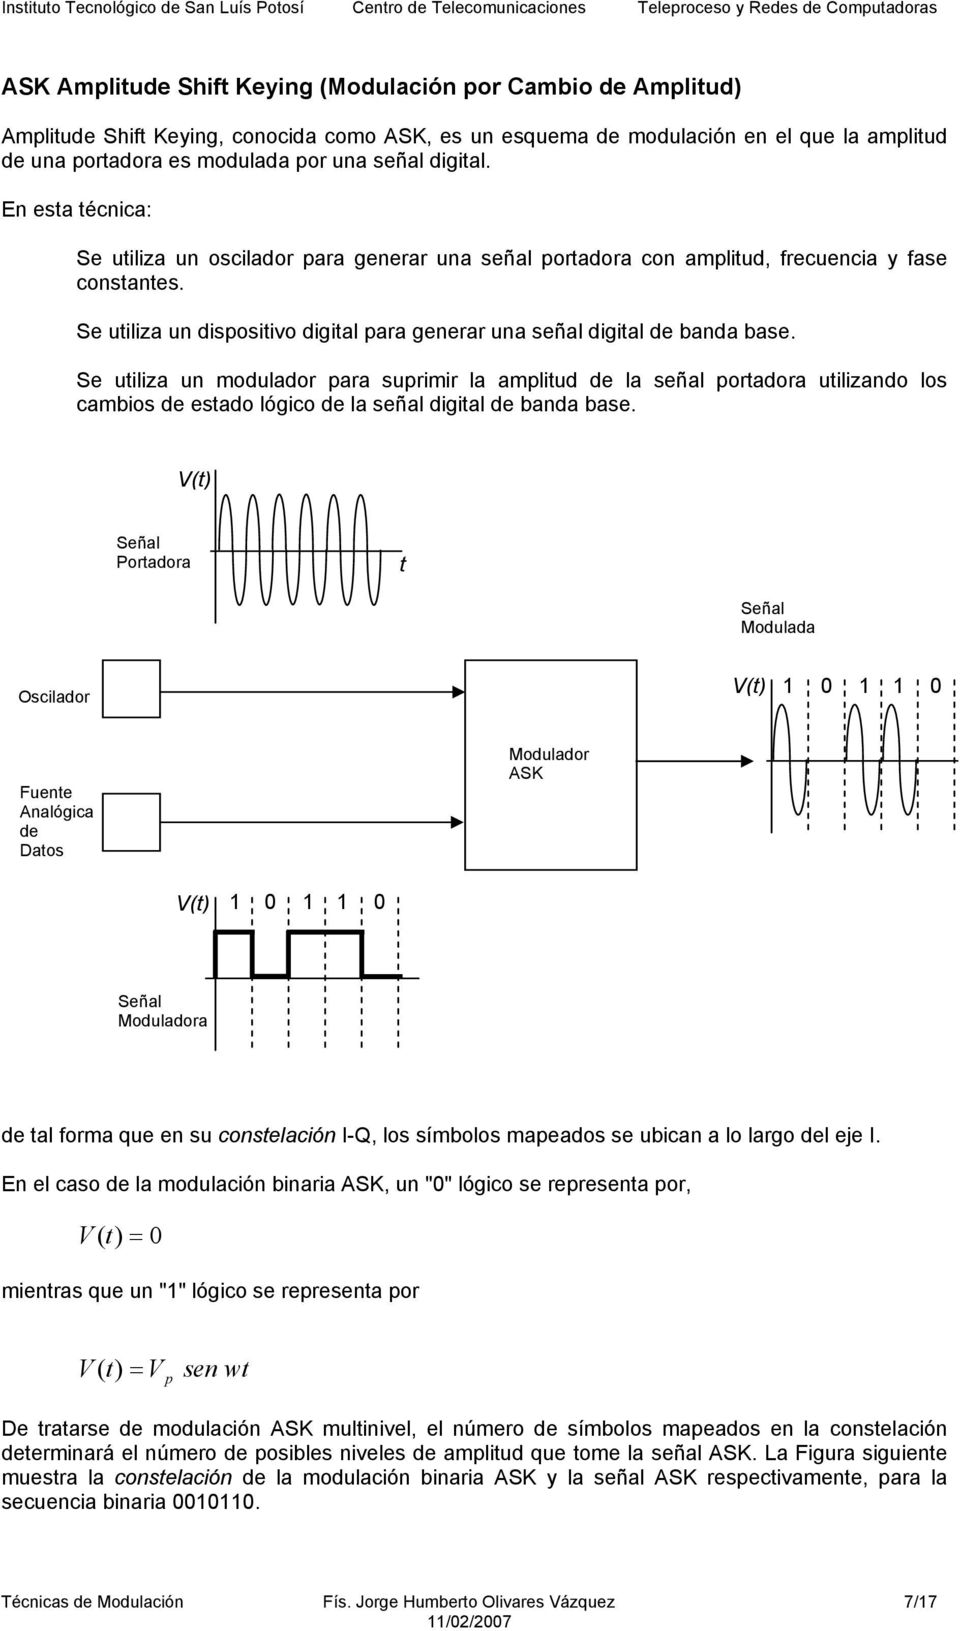 Se uiliza un modulador para suprimir la ampliud de la señal poradora uilizando los cambios de esado lógico de la señal digial de banda base.